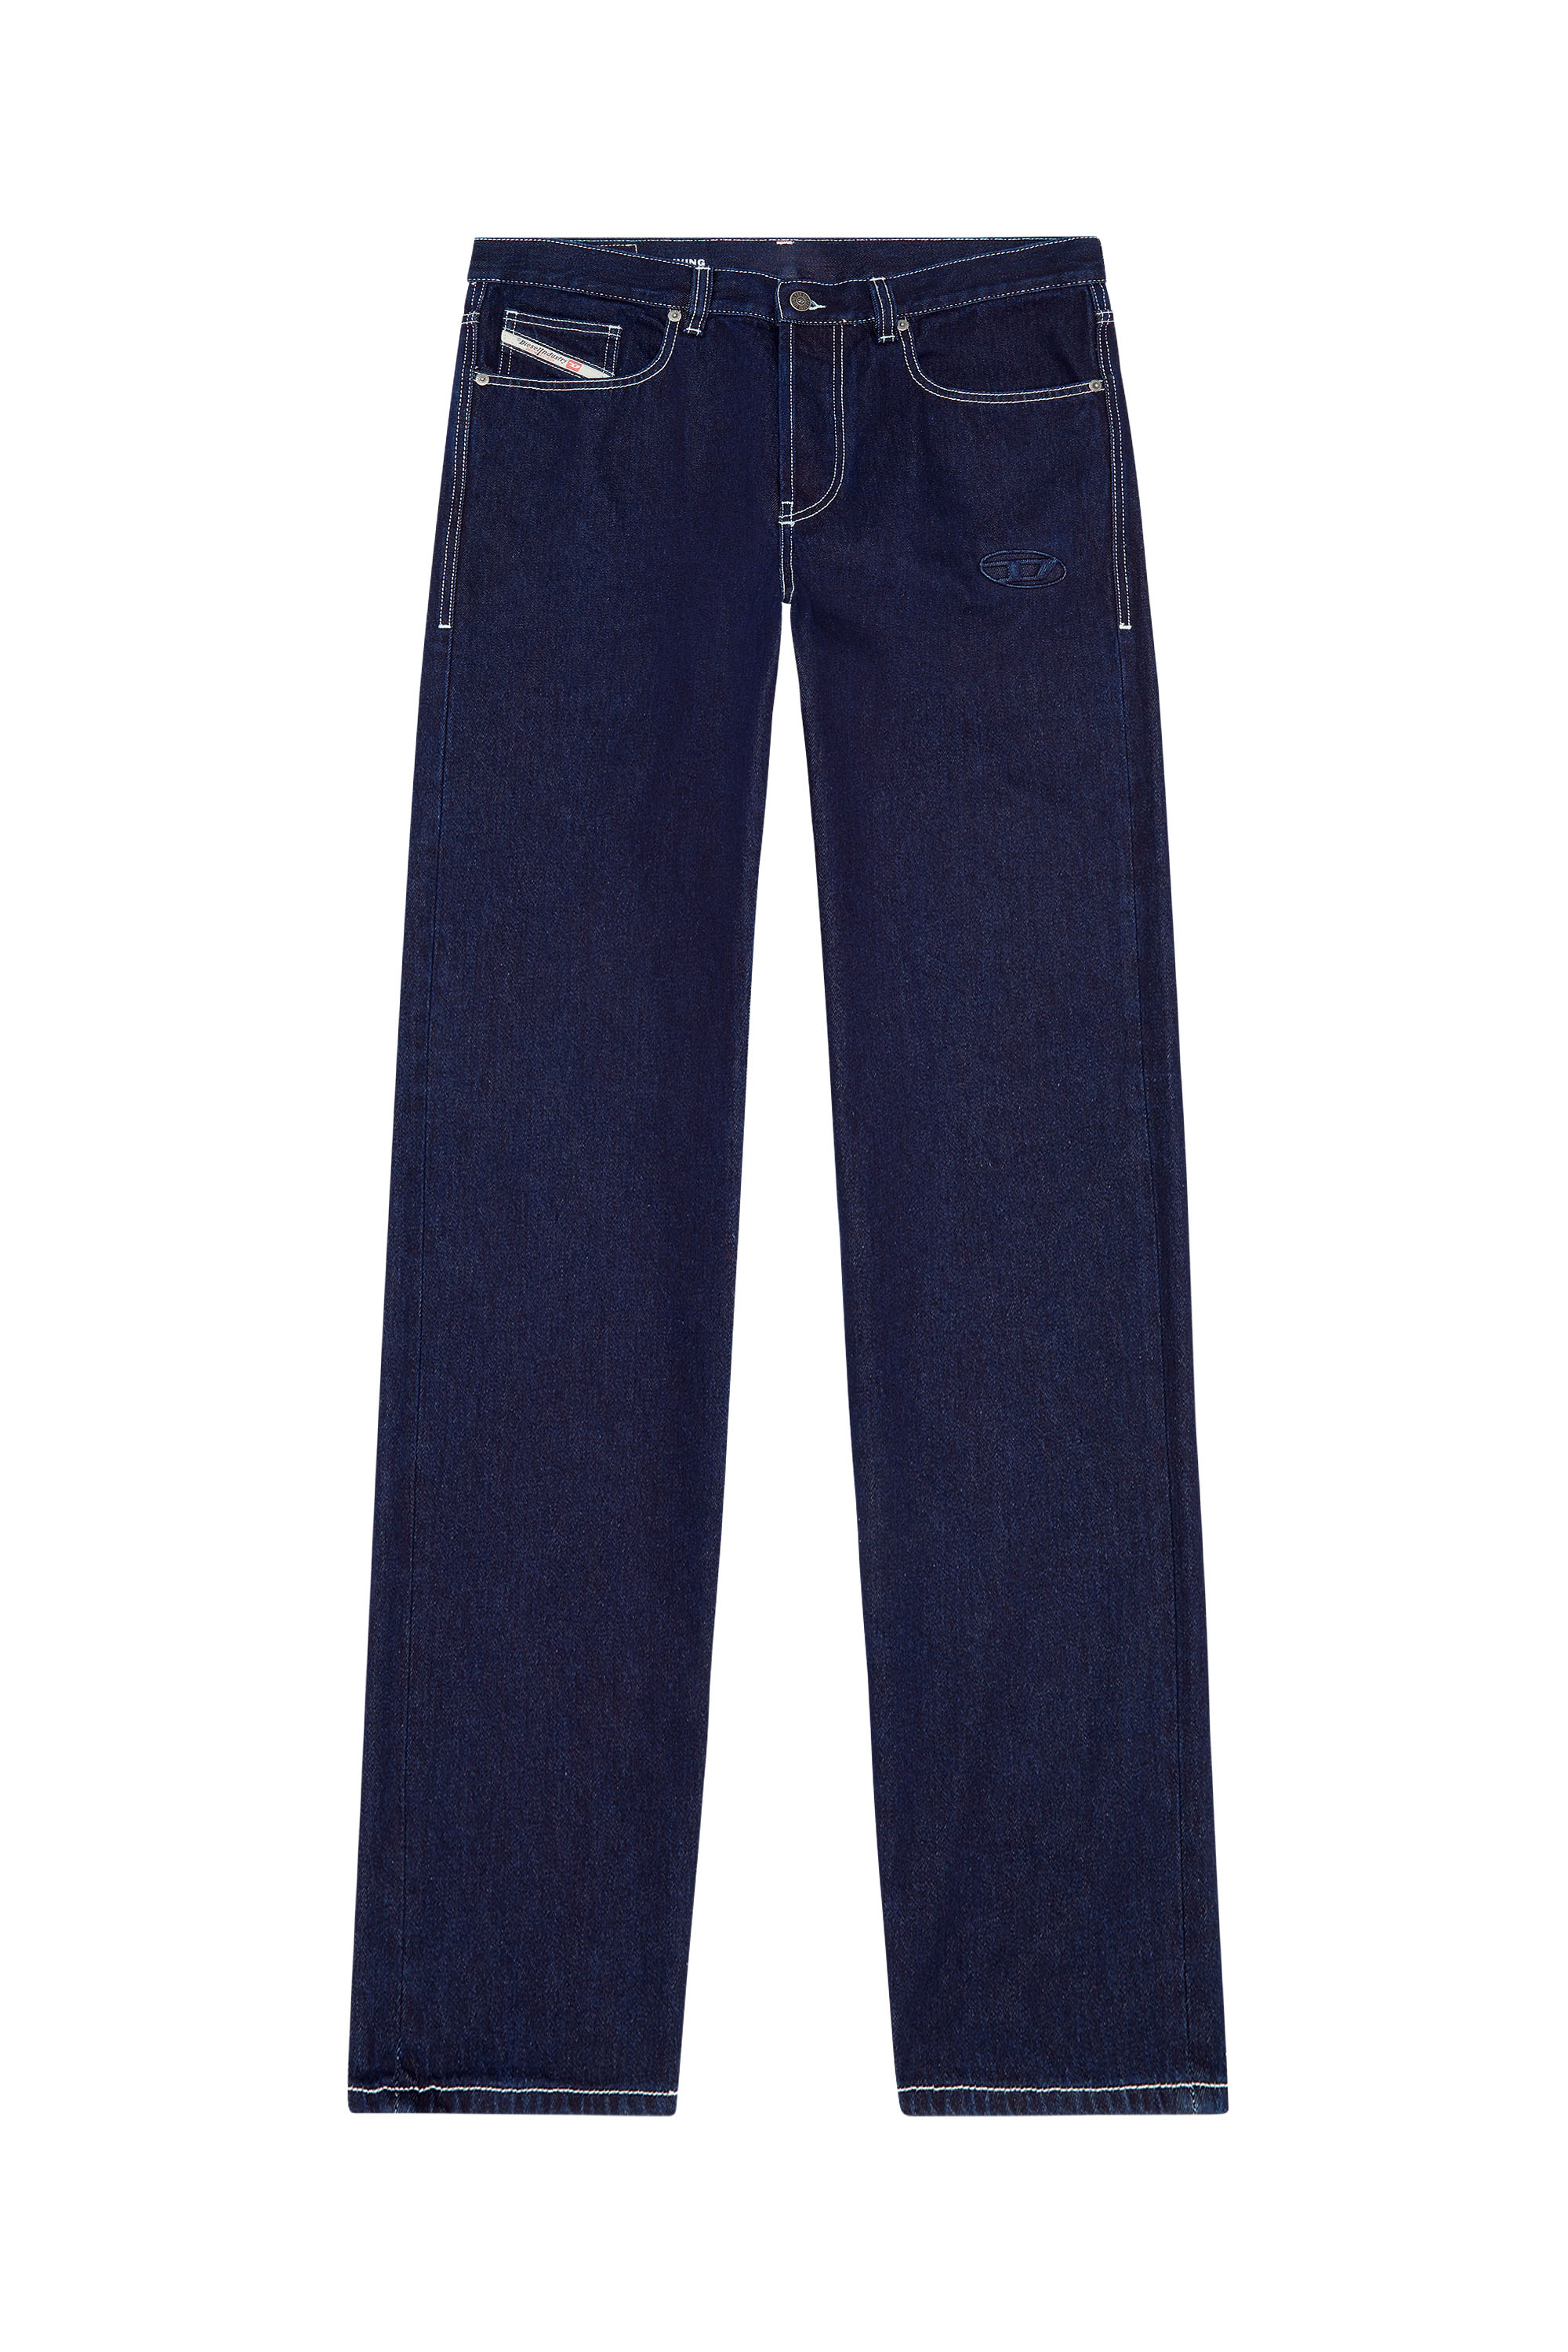 2010 D-Macs 09F19 Straight Jeans, Azul Oscuro - Vaqueros